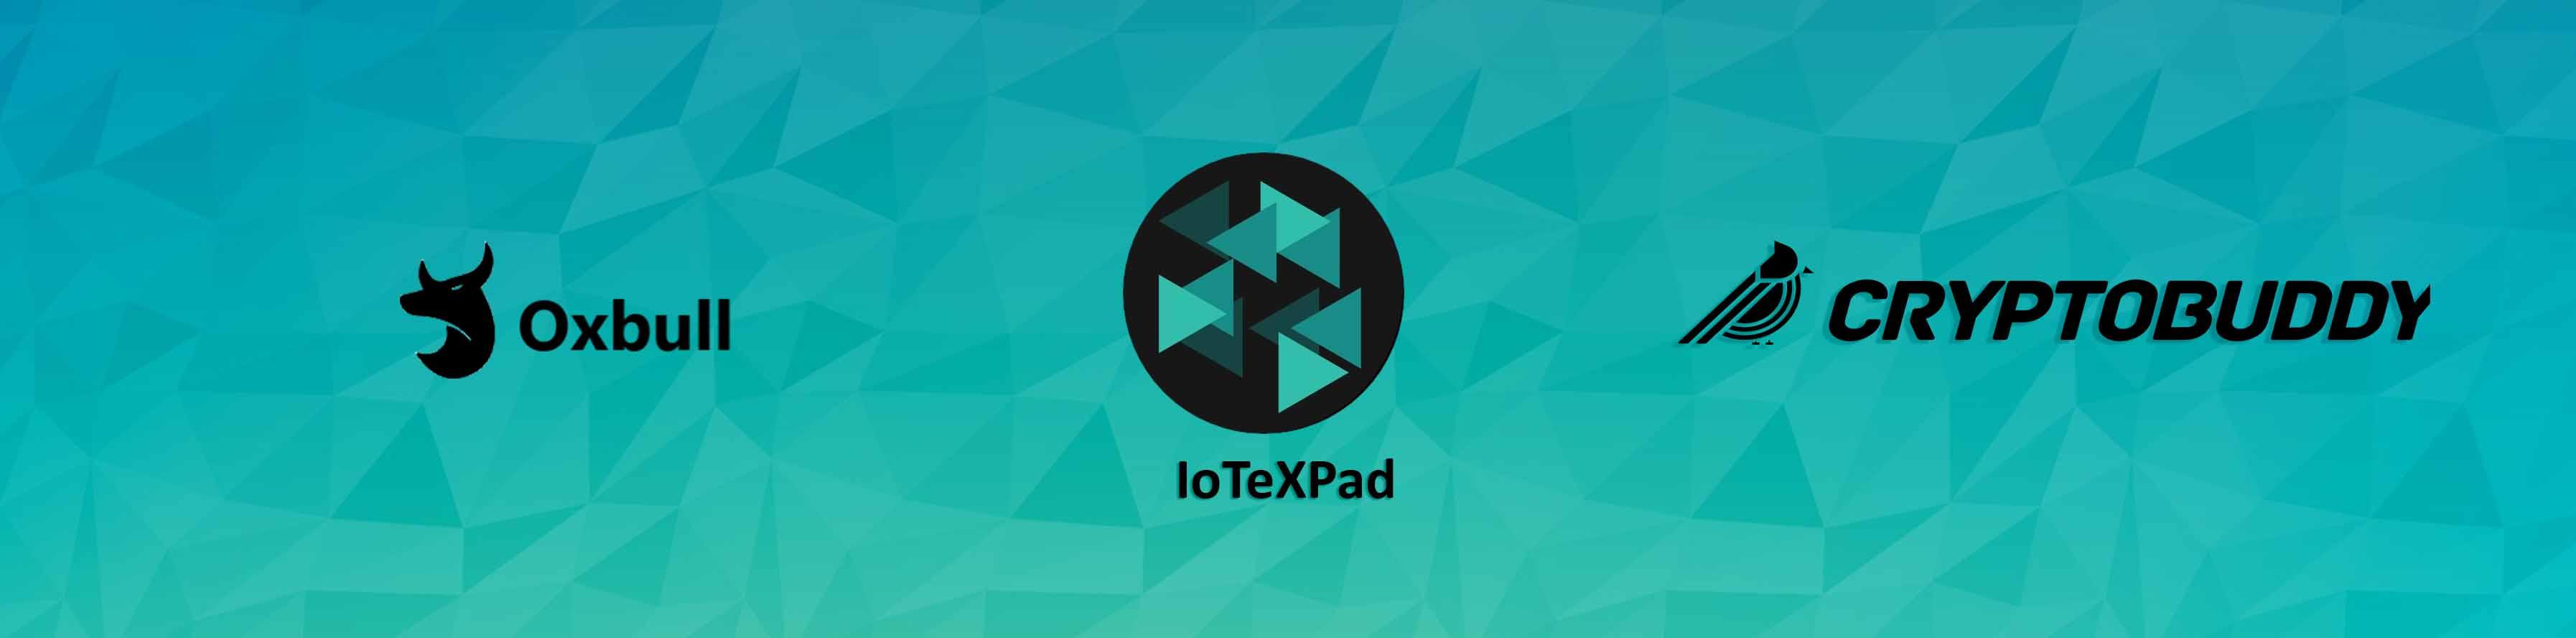 IoTeXPad Oxbull IDO - Whitelist for Cryptobuddy Community